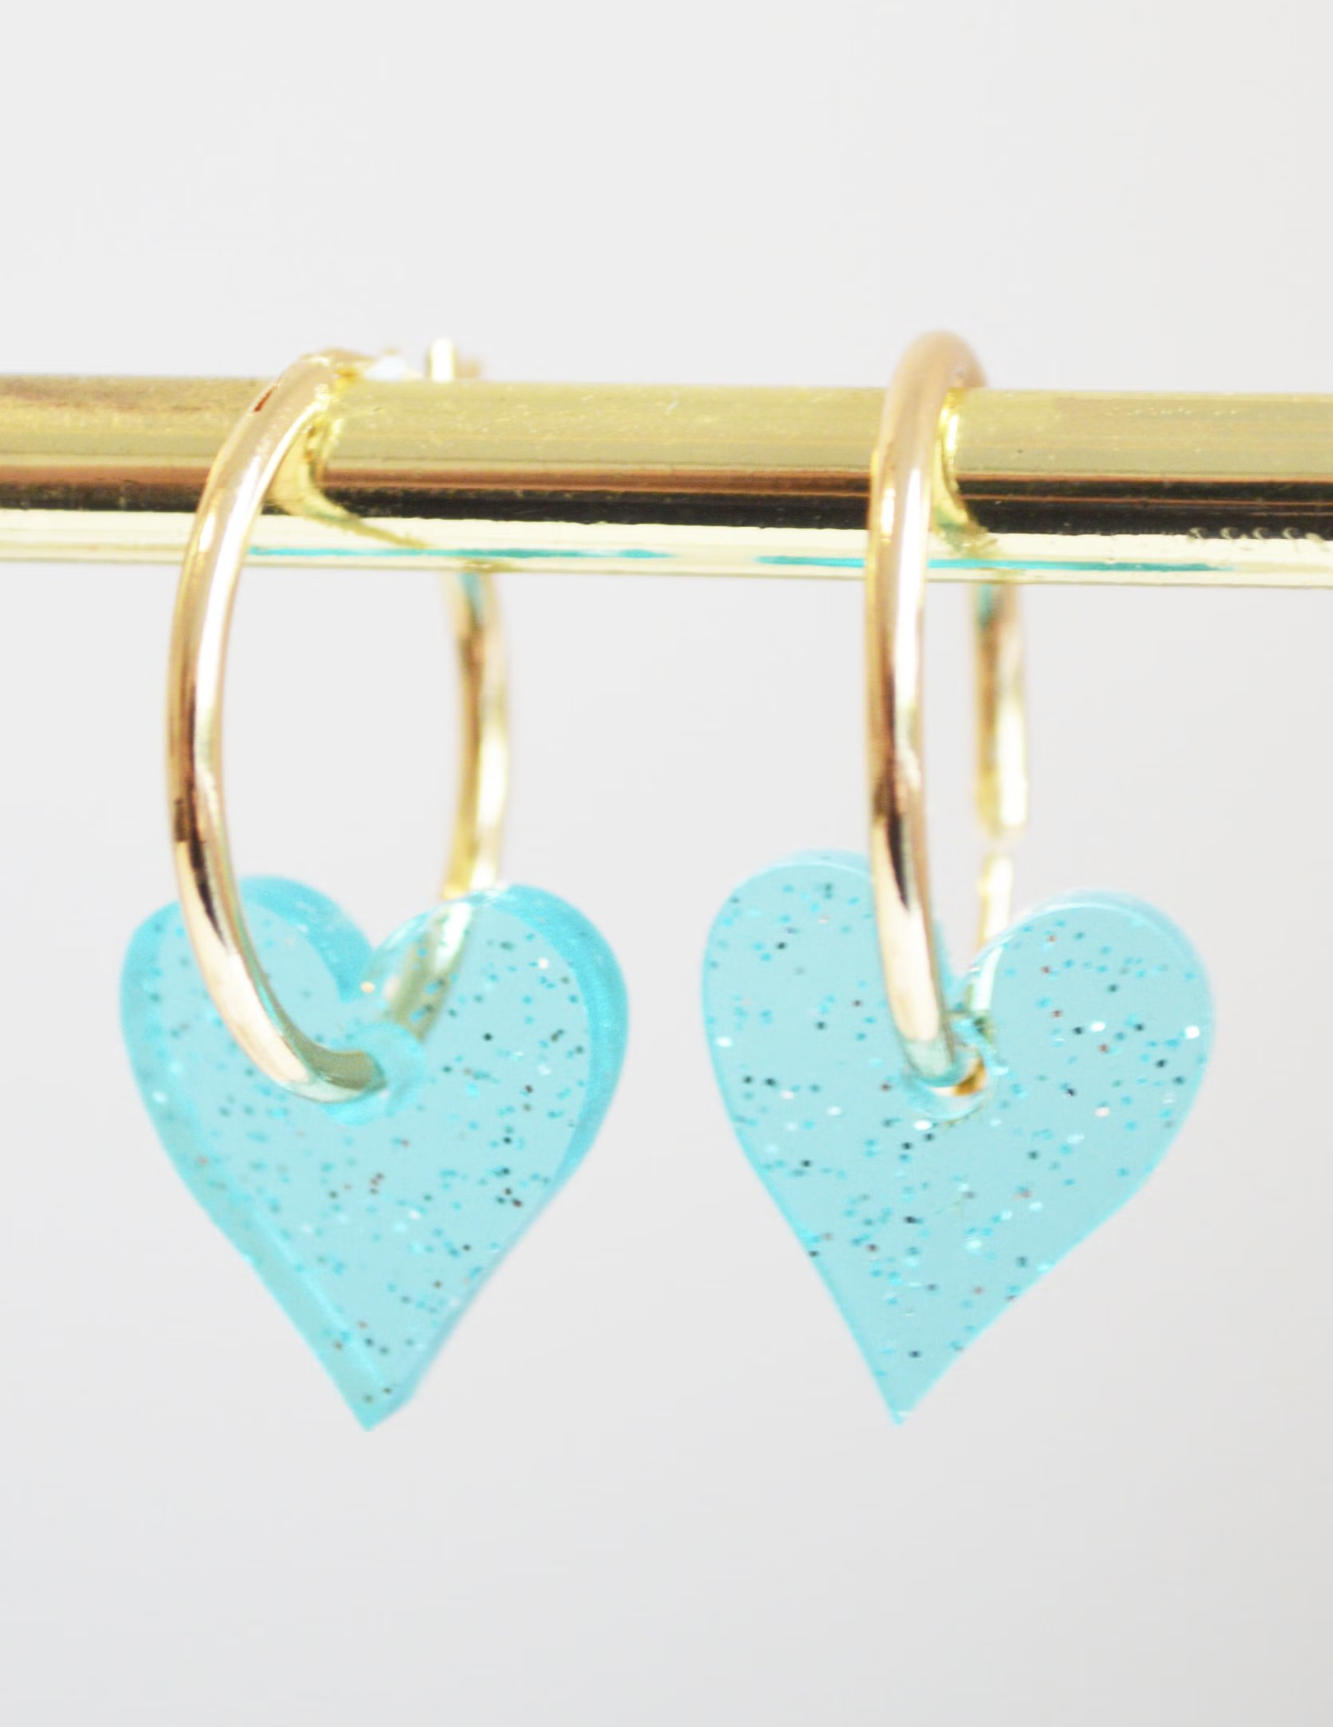 Hagen & Co Mini Heart Earrings- Aqua Sparkle